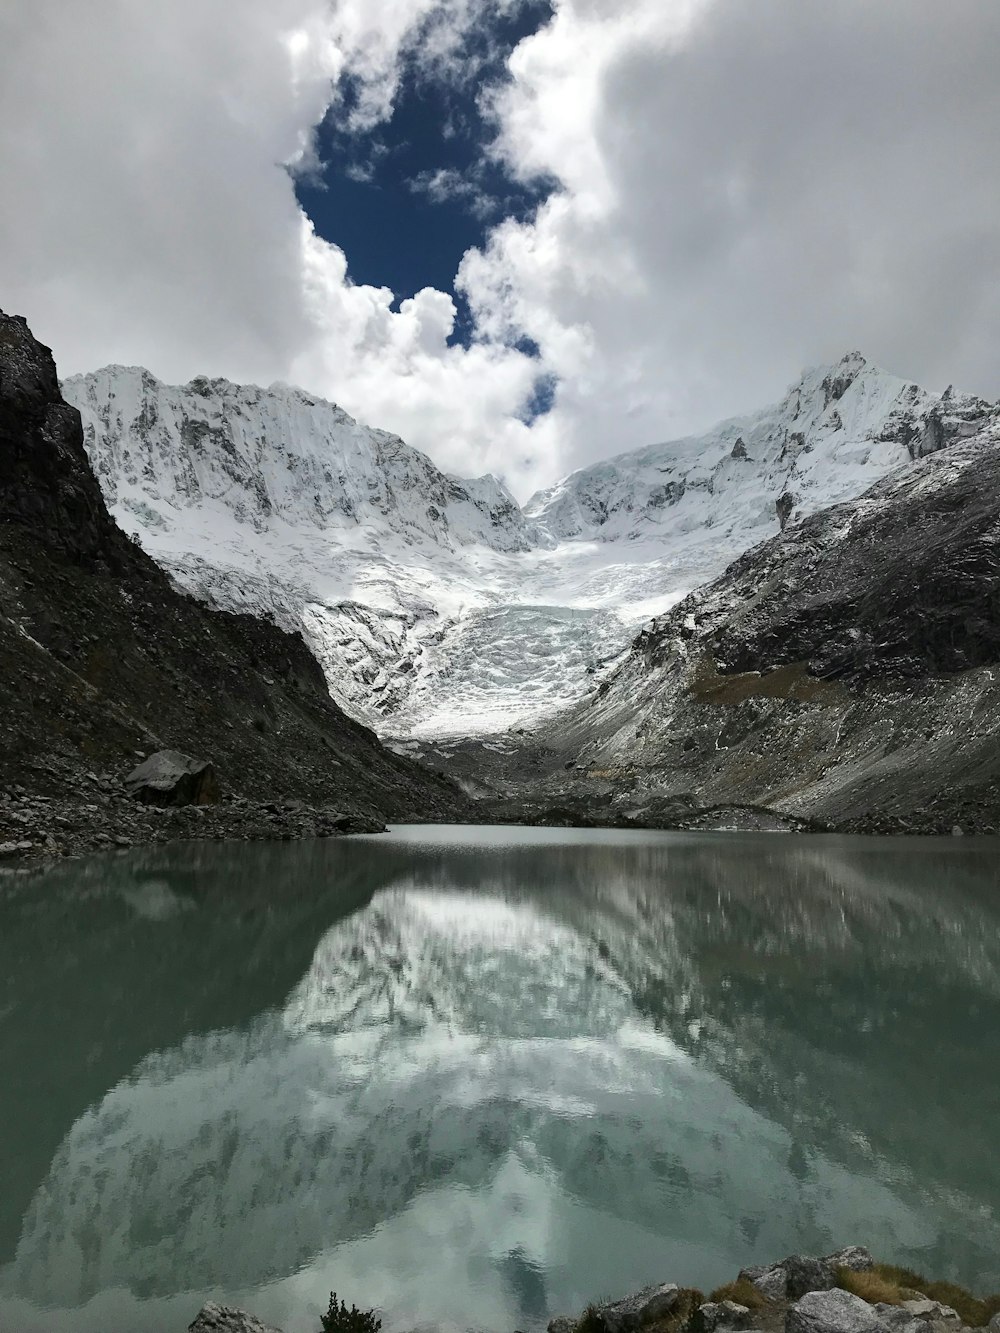 Cuerpo de agua rodeado de montañas bajo un cielo gris